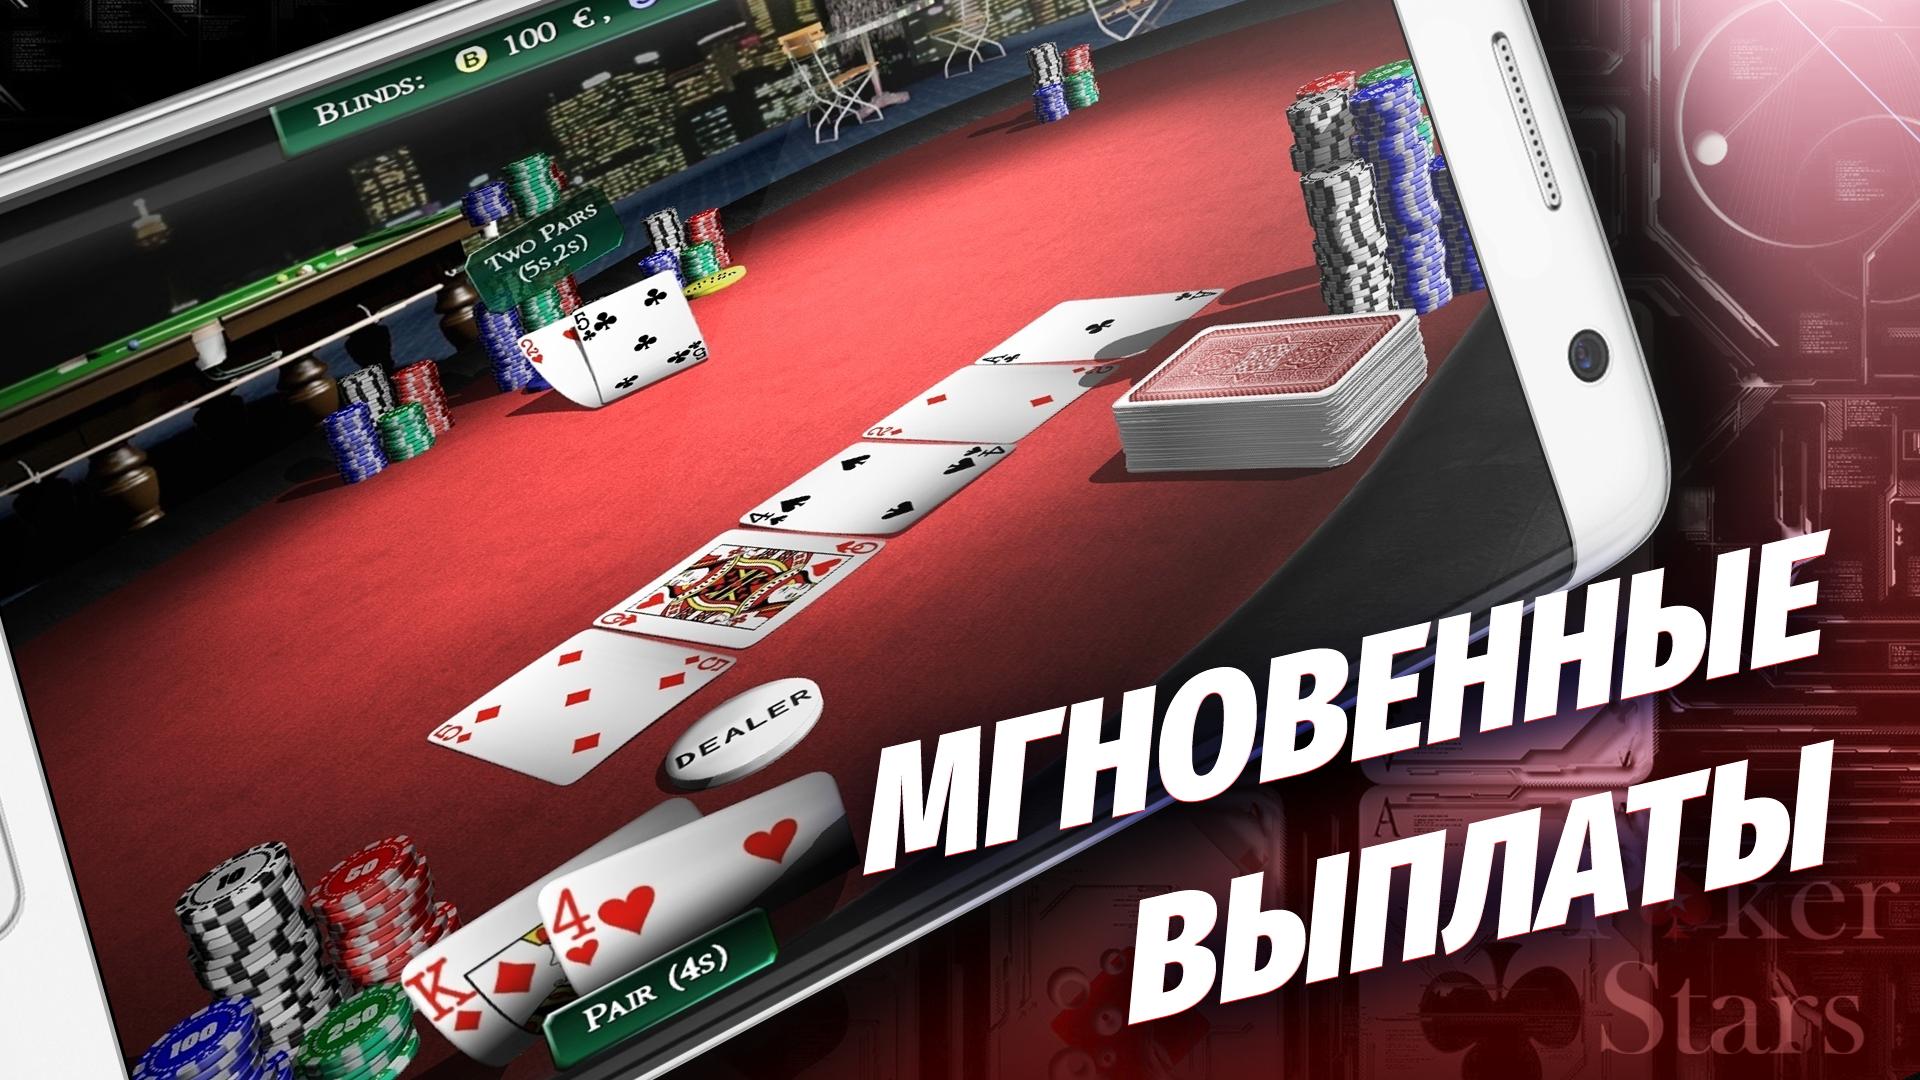 Стар покер играть онлайн то скачать новую версию фонбет на андроид